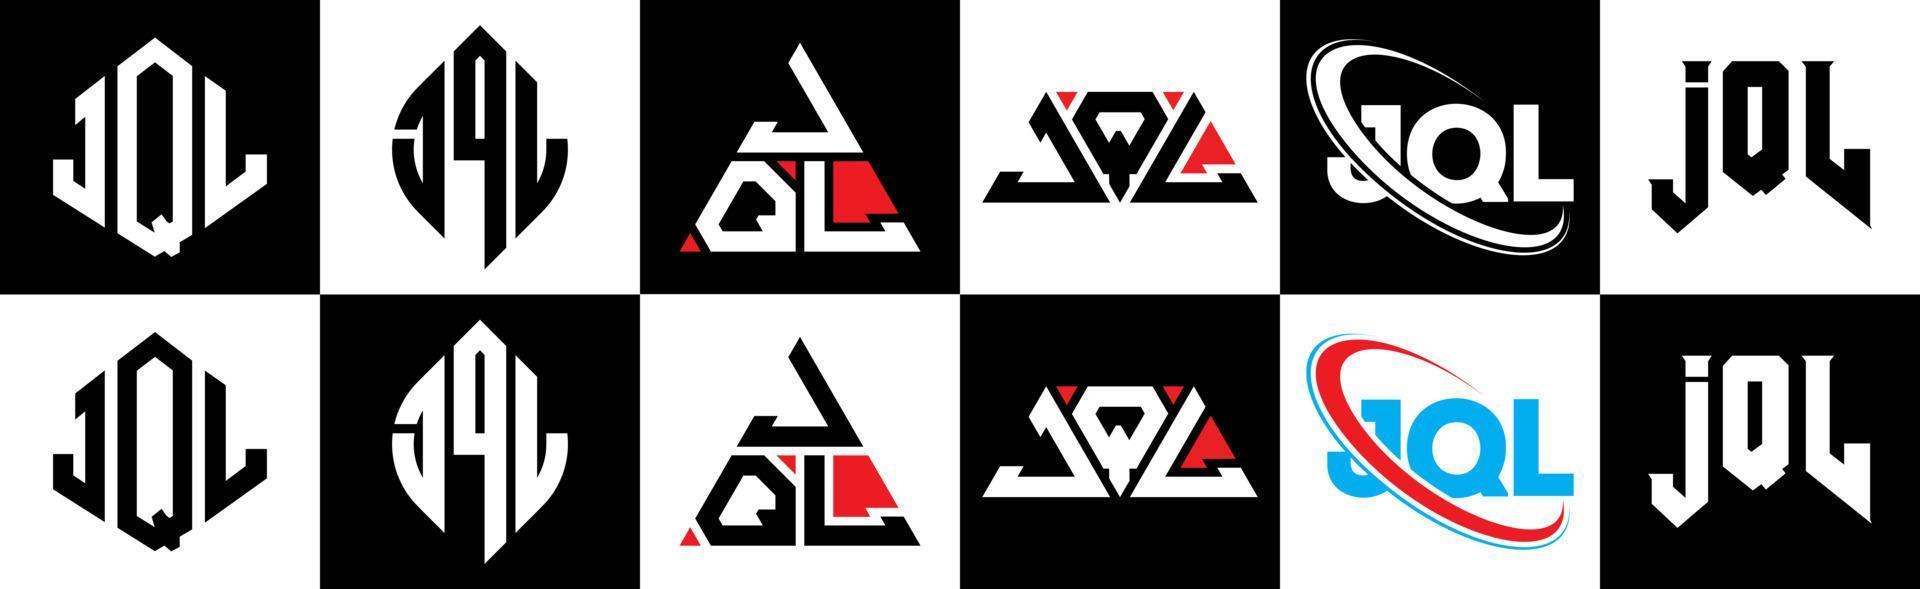 création de logo de lettre jql en six styles. polygone jql, cercle, triangle, hexagone, style plat et simple avec logo de lettre de variation de couleur noir et blanc dans un plan de travail. logo jql minimaliste et classique vecteur